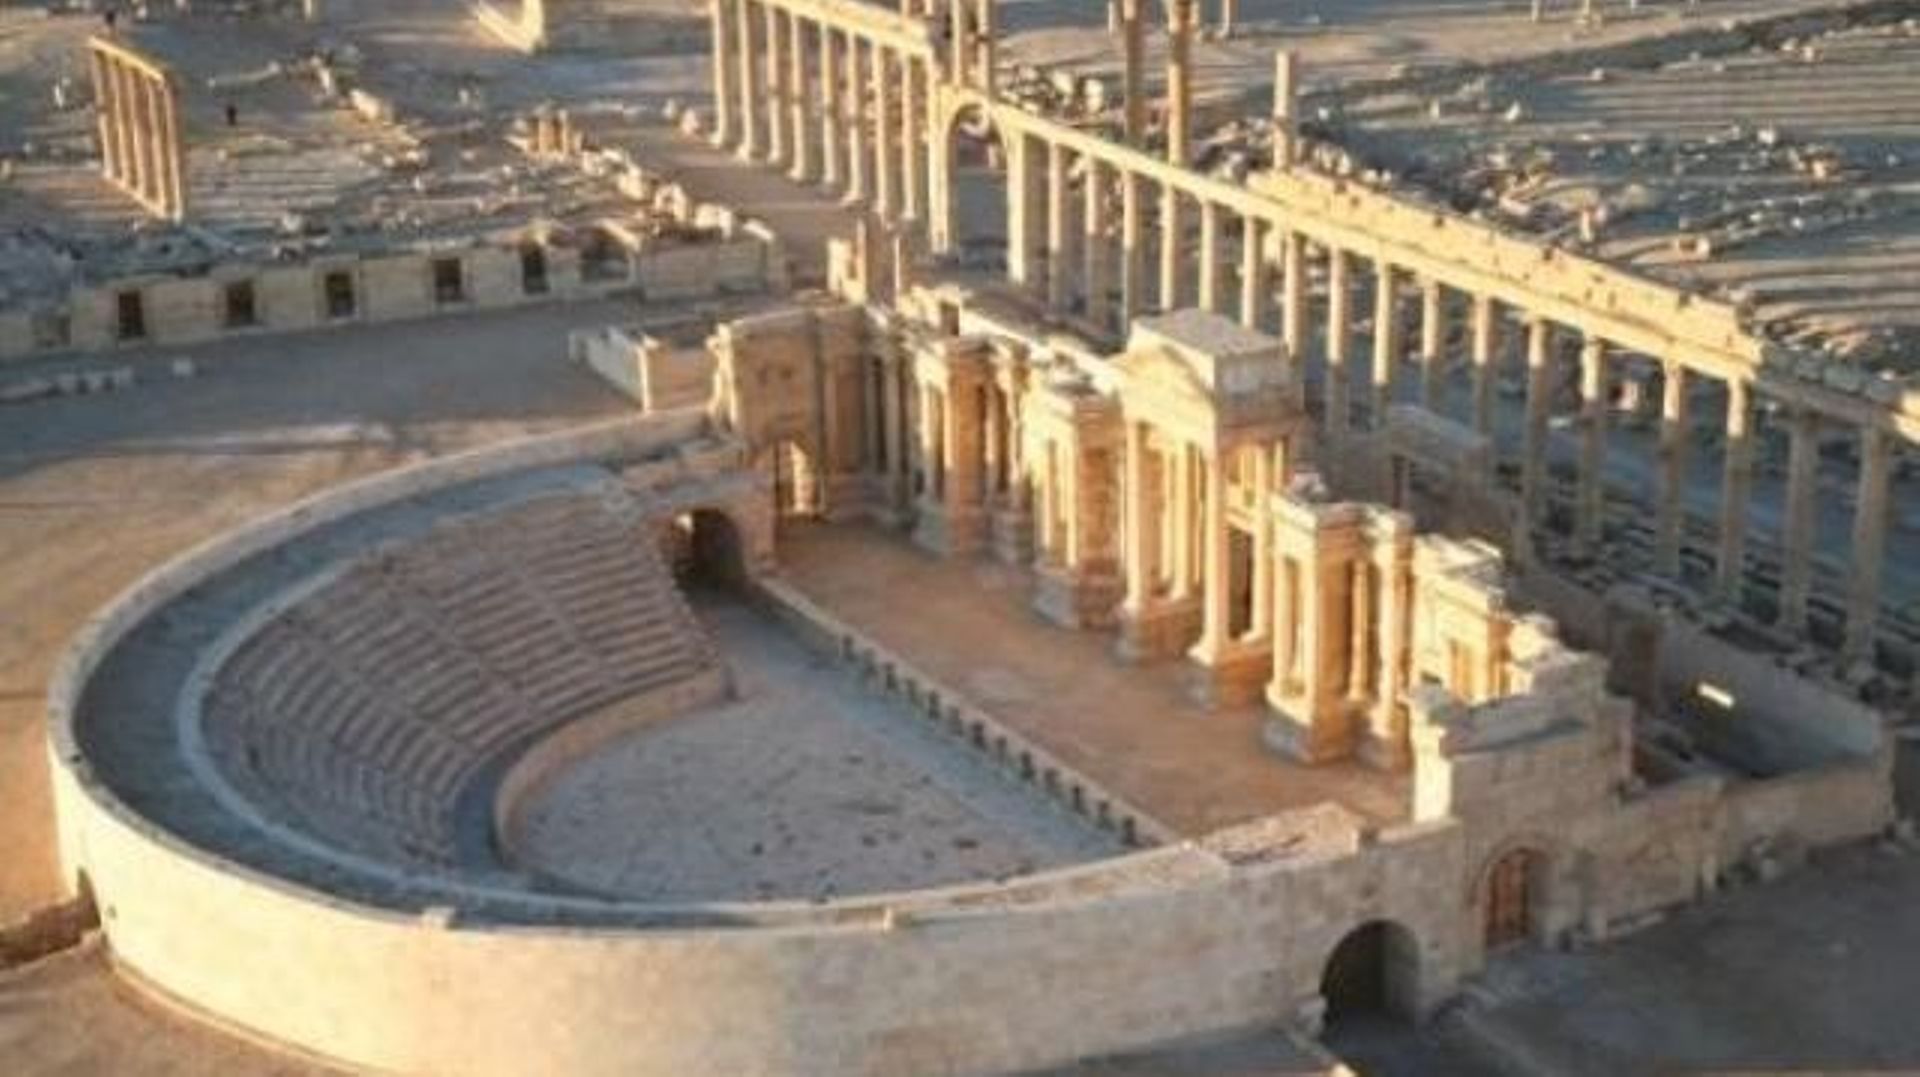 Le groupe EI n'est pas le seul à piller l'héritage archéologique de la Syrie